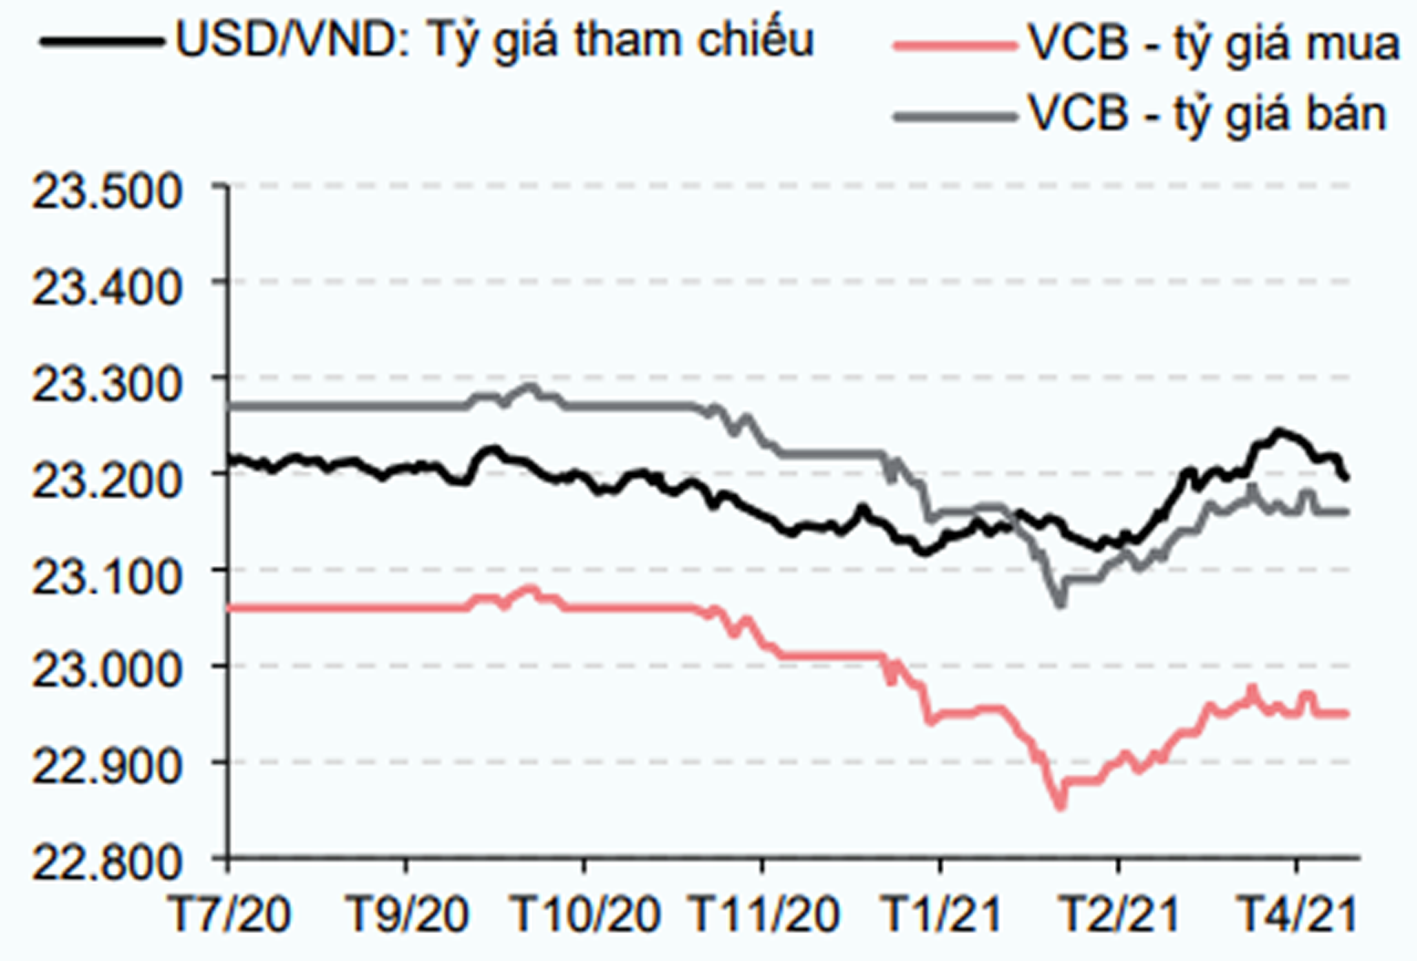  Tỷ giá USD/VND đã có xu hướng giảm trong thời gian qua. Nguồn: SBV, CEIC & HSC